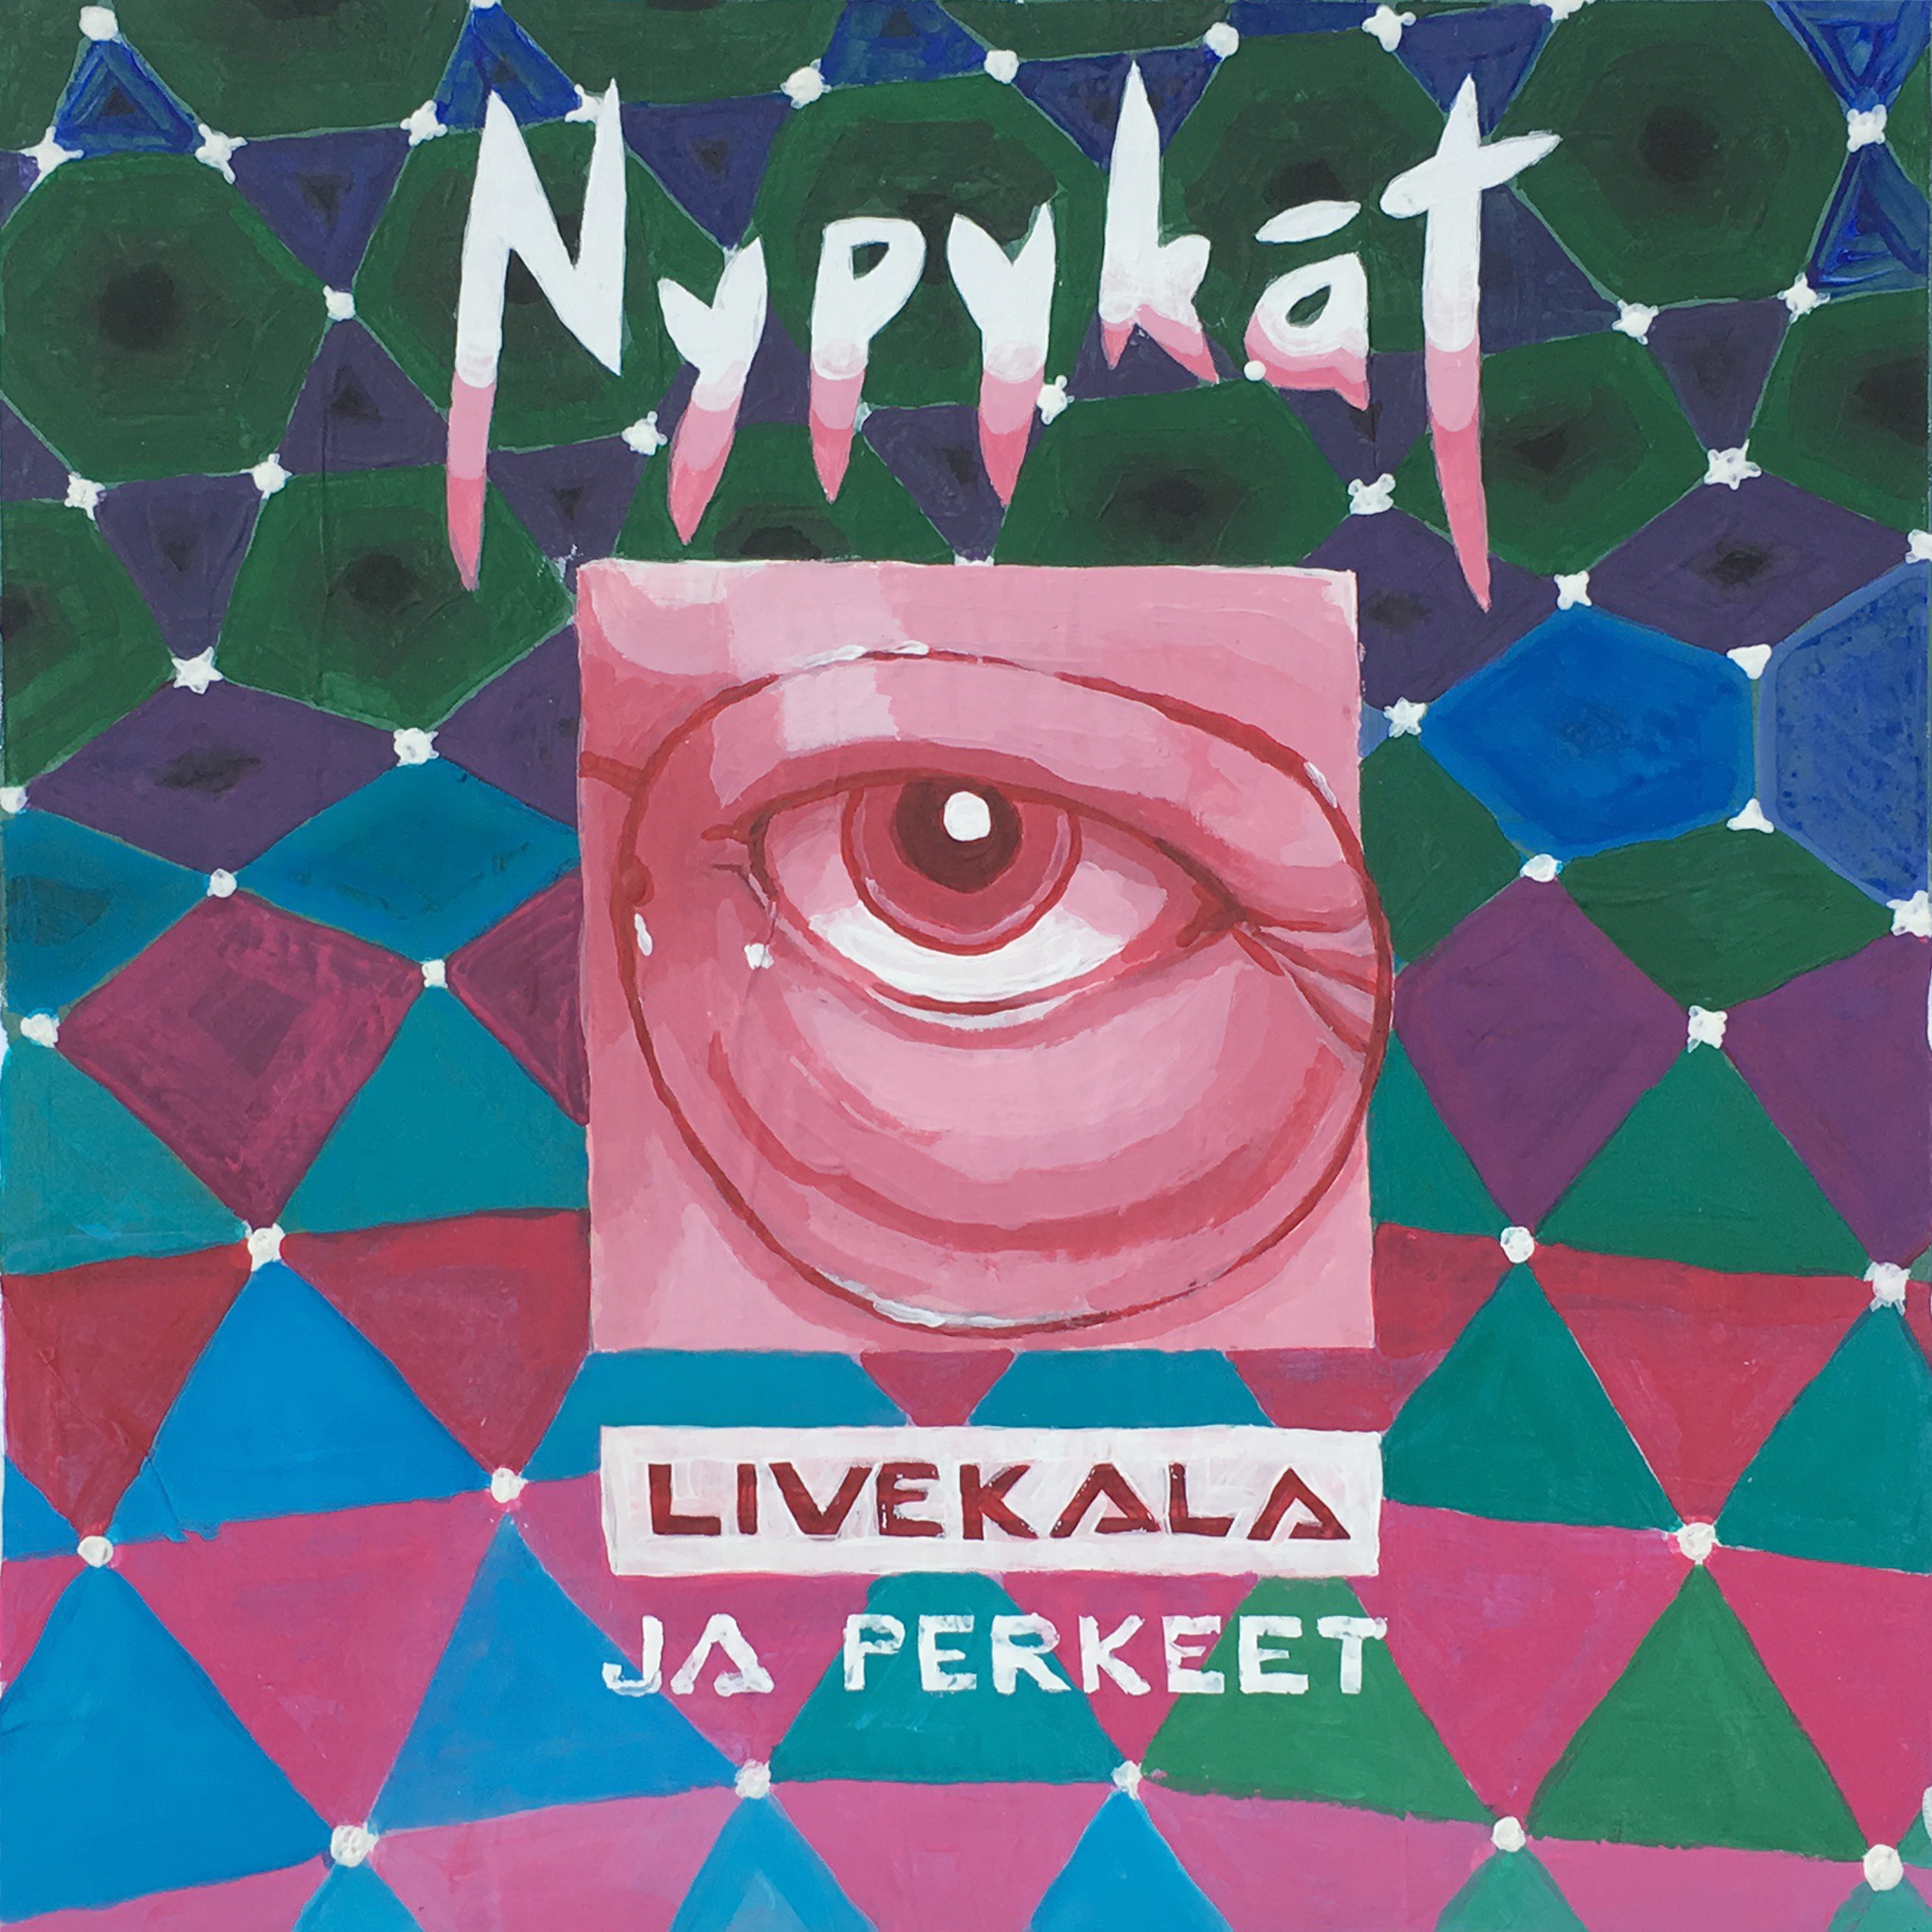 Nypyk t - Livekala ja perkeet - CD